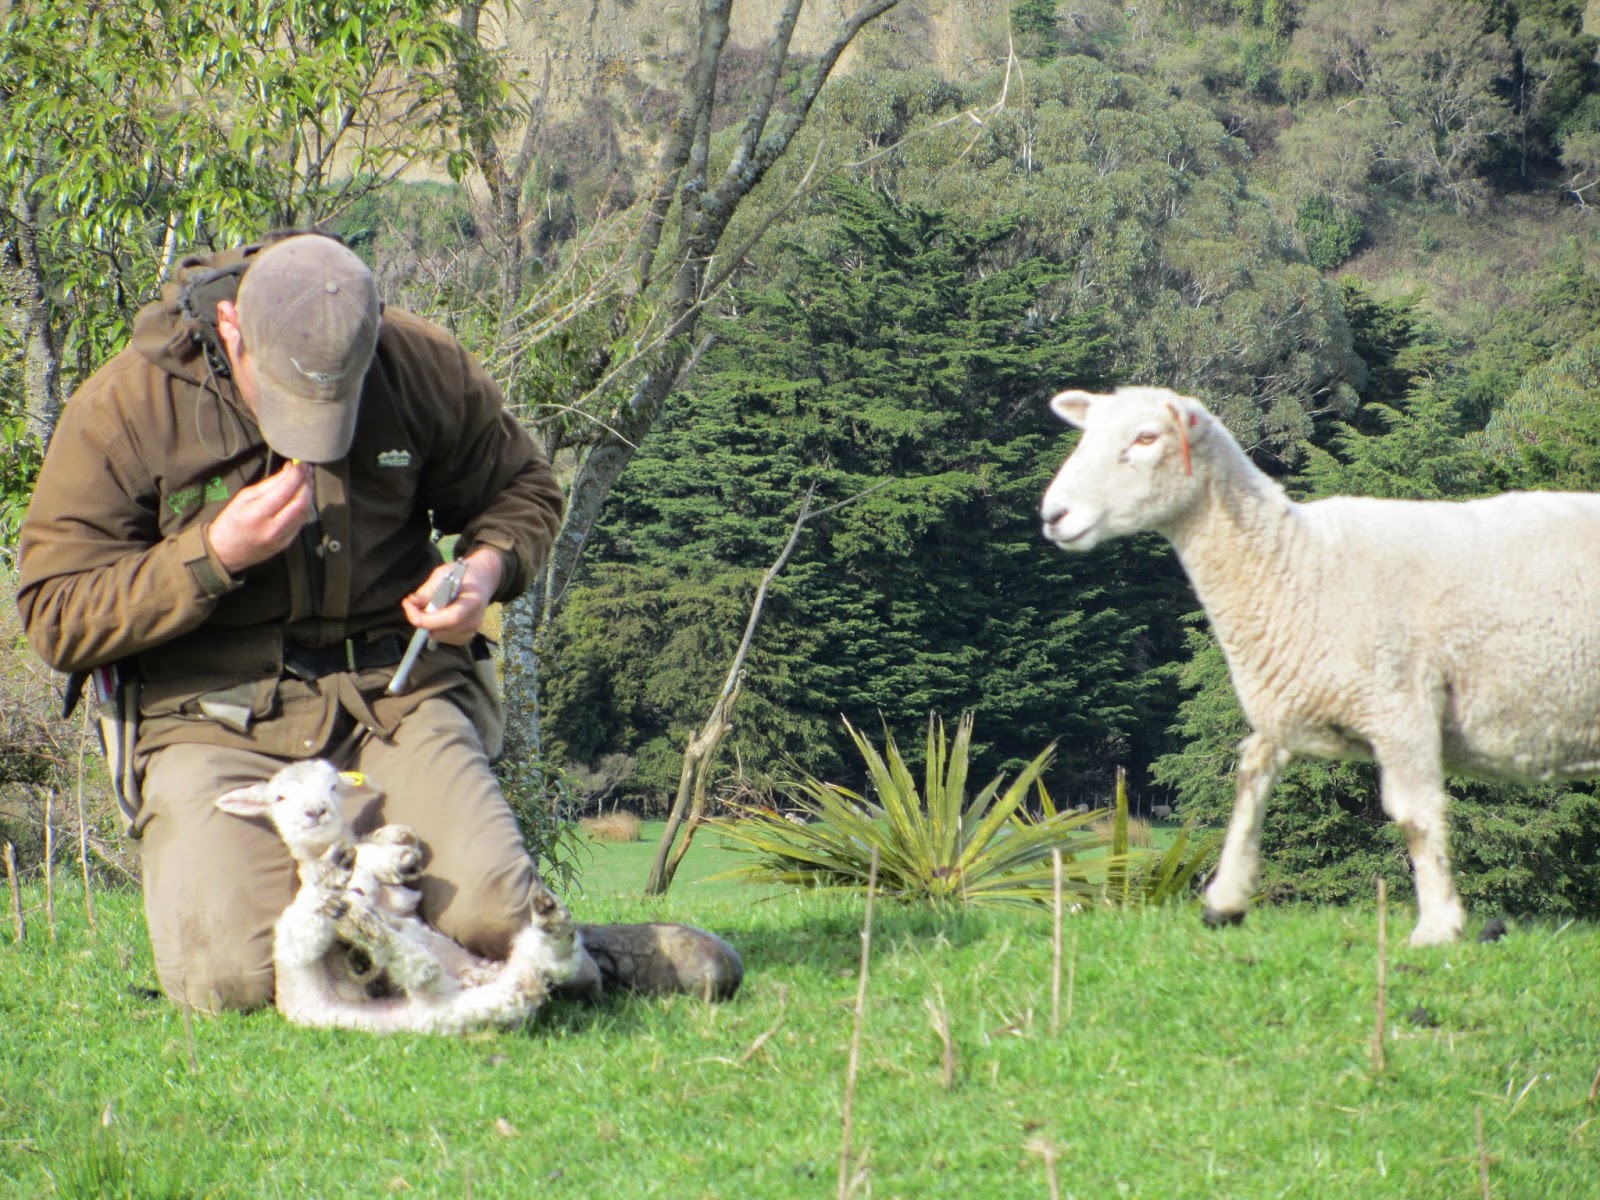 Rob tagging lambs at birth. 2006